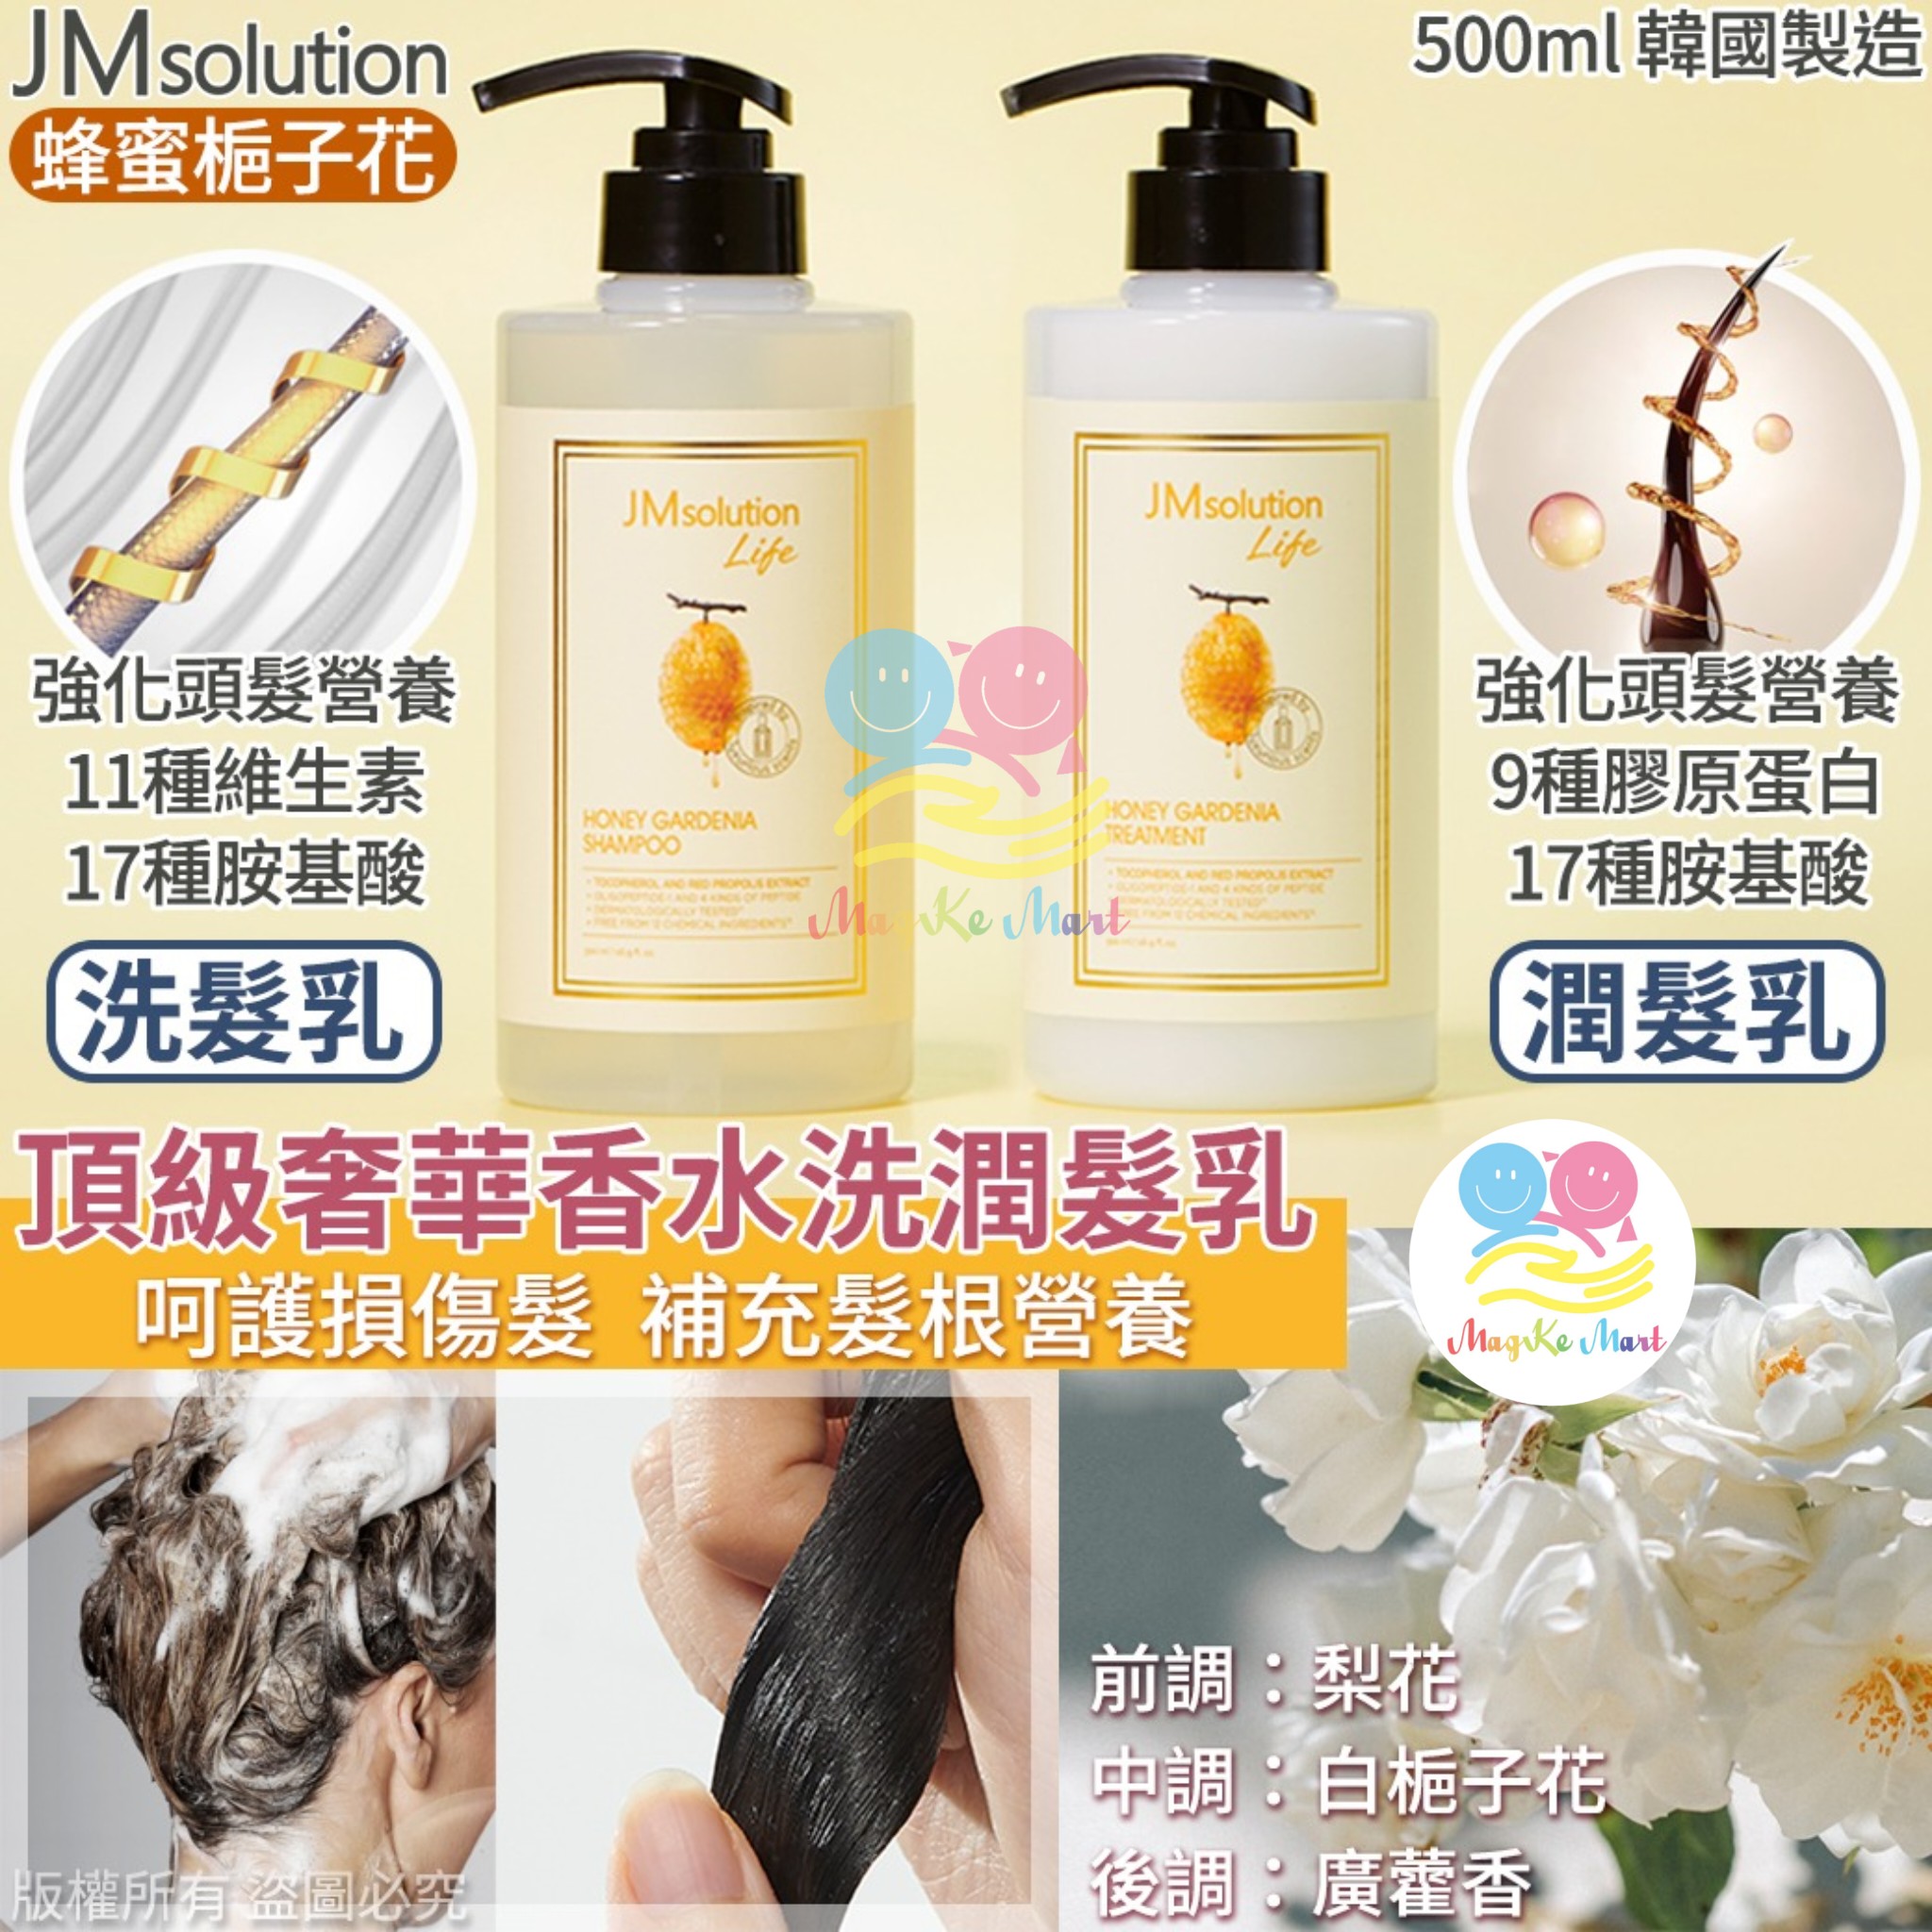 韓國 JM solution 頂級奢華香水洗護系列 500ml (B) 潤髮乳